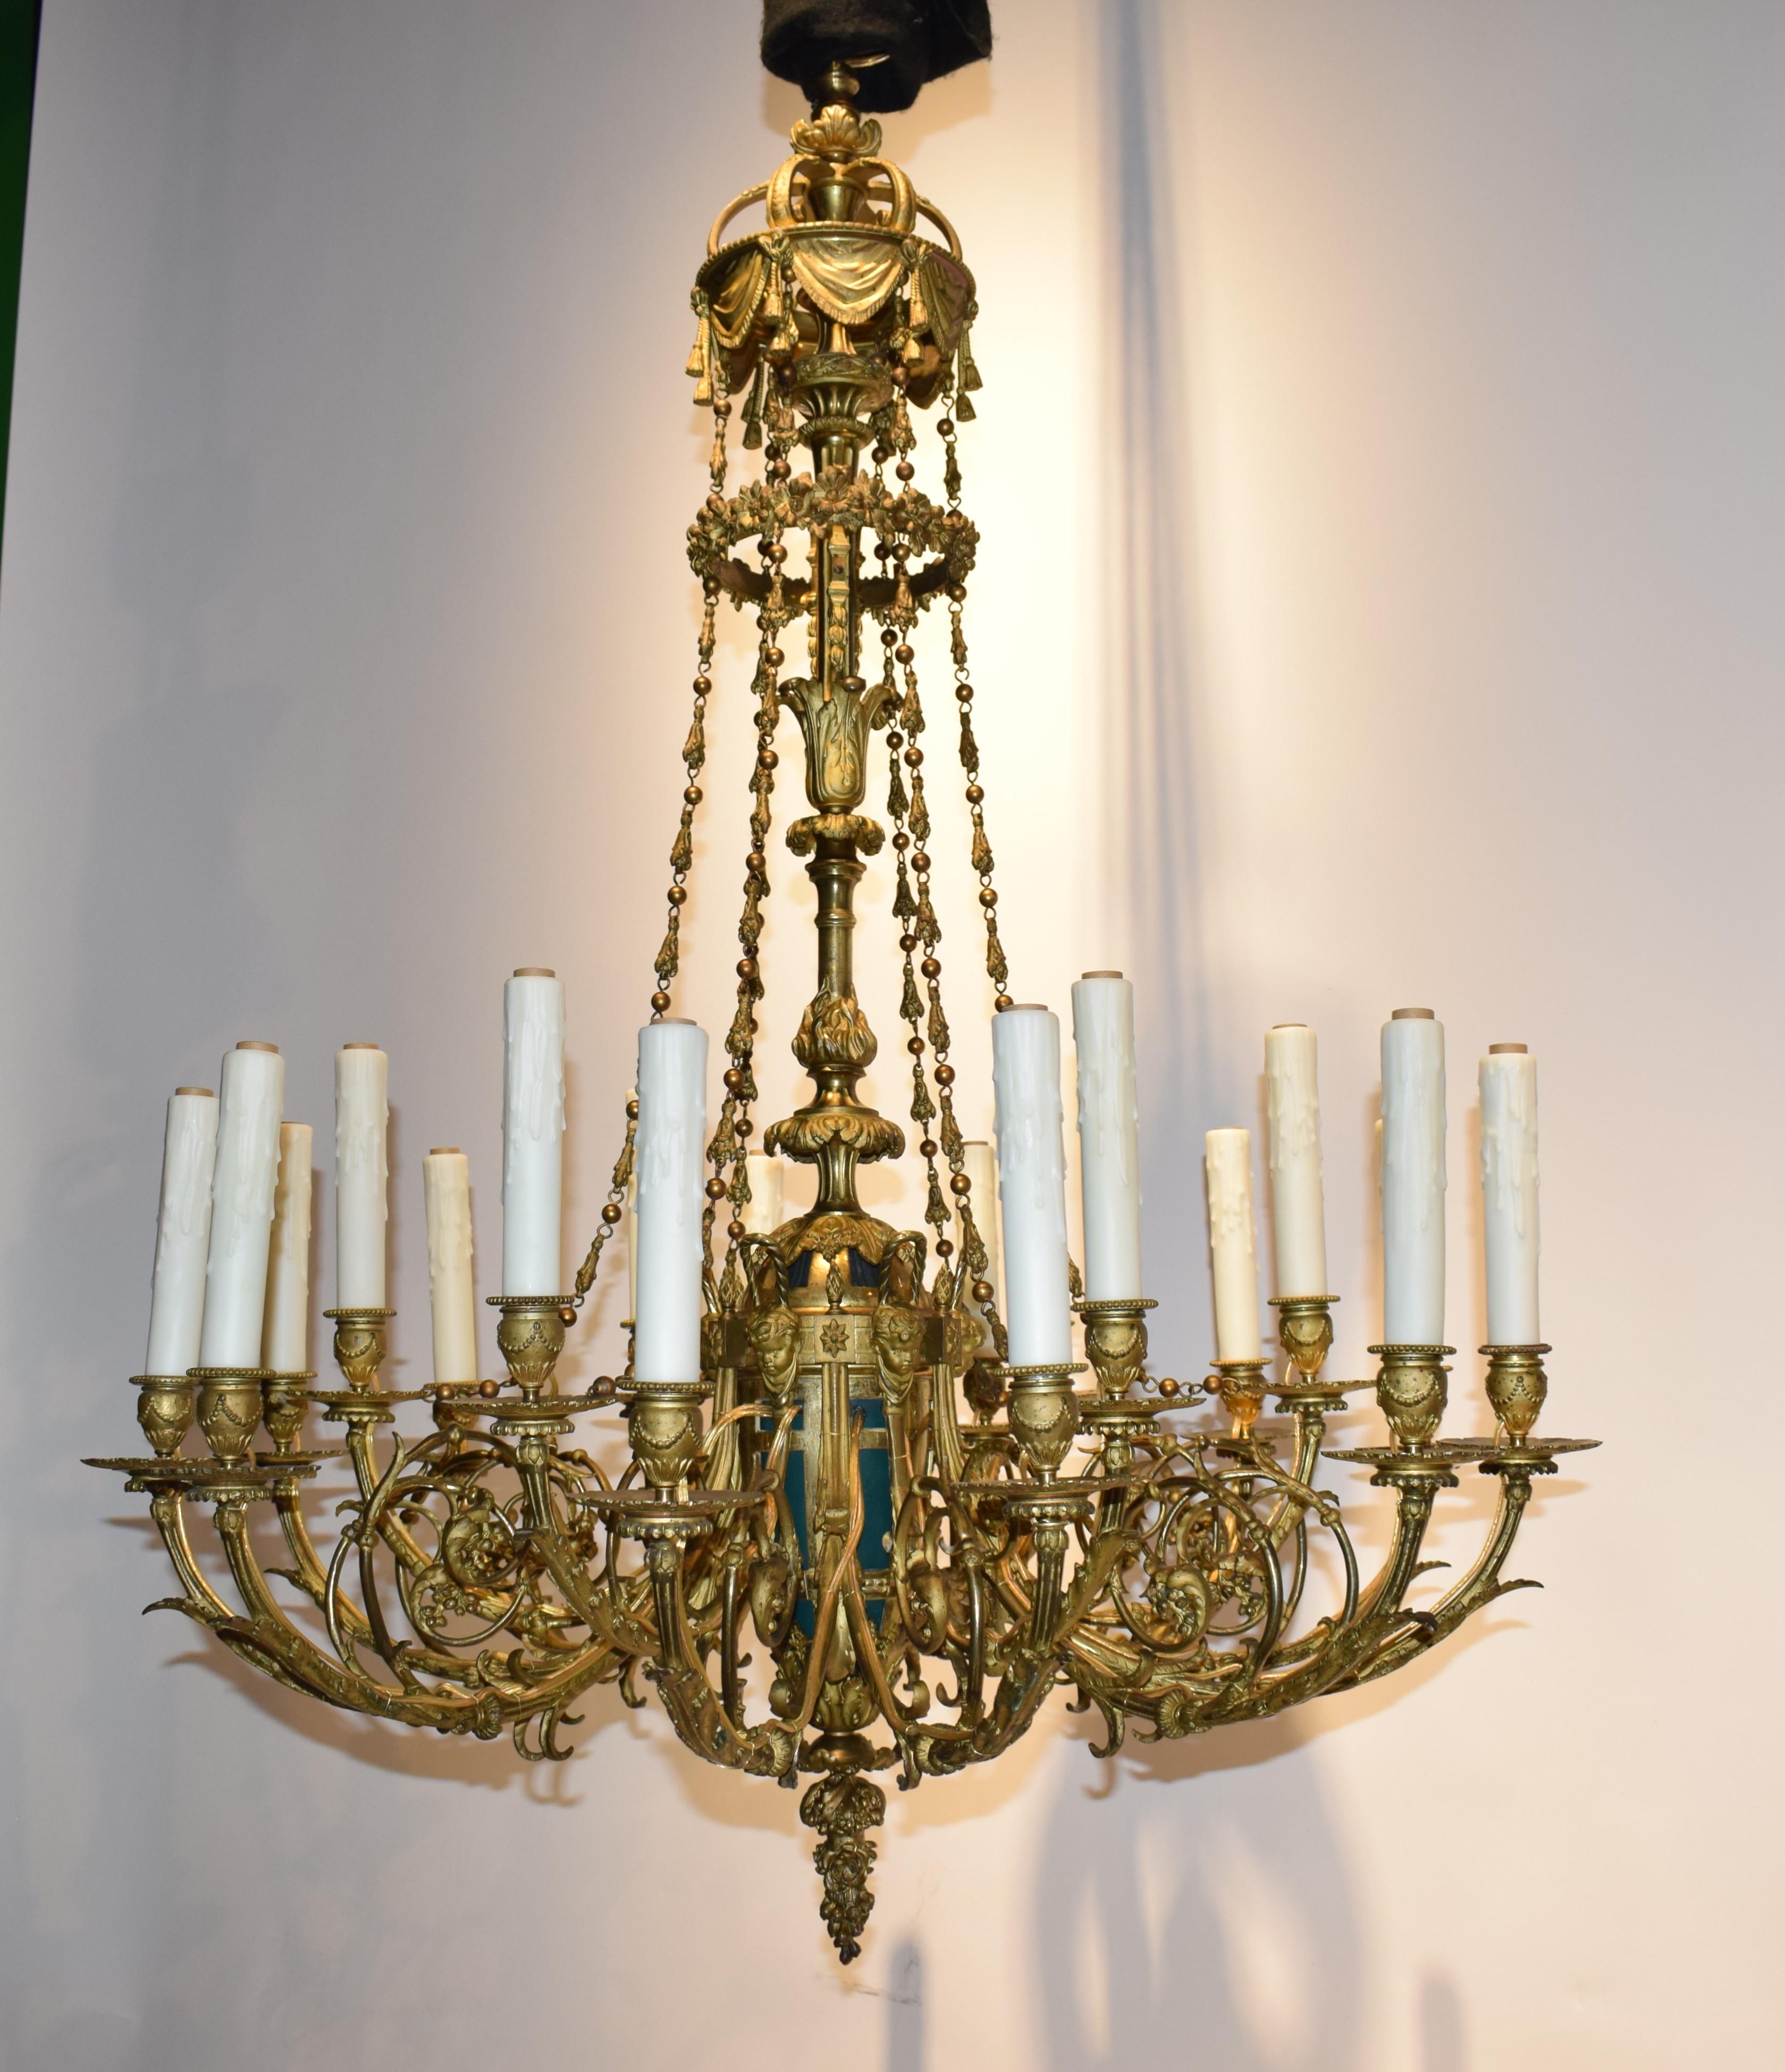 Extraordinaire lustre en bronze doré à l'origine pour bougies (aujourd'hui électrifié)
France, vers 1880. 18 Lumières. 
Dimensions : Hauteur 46